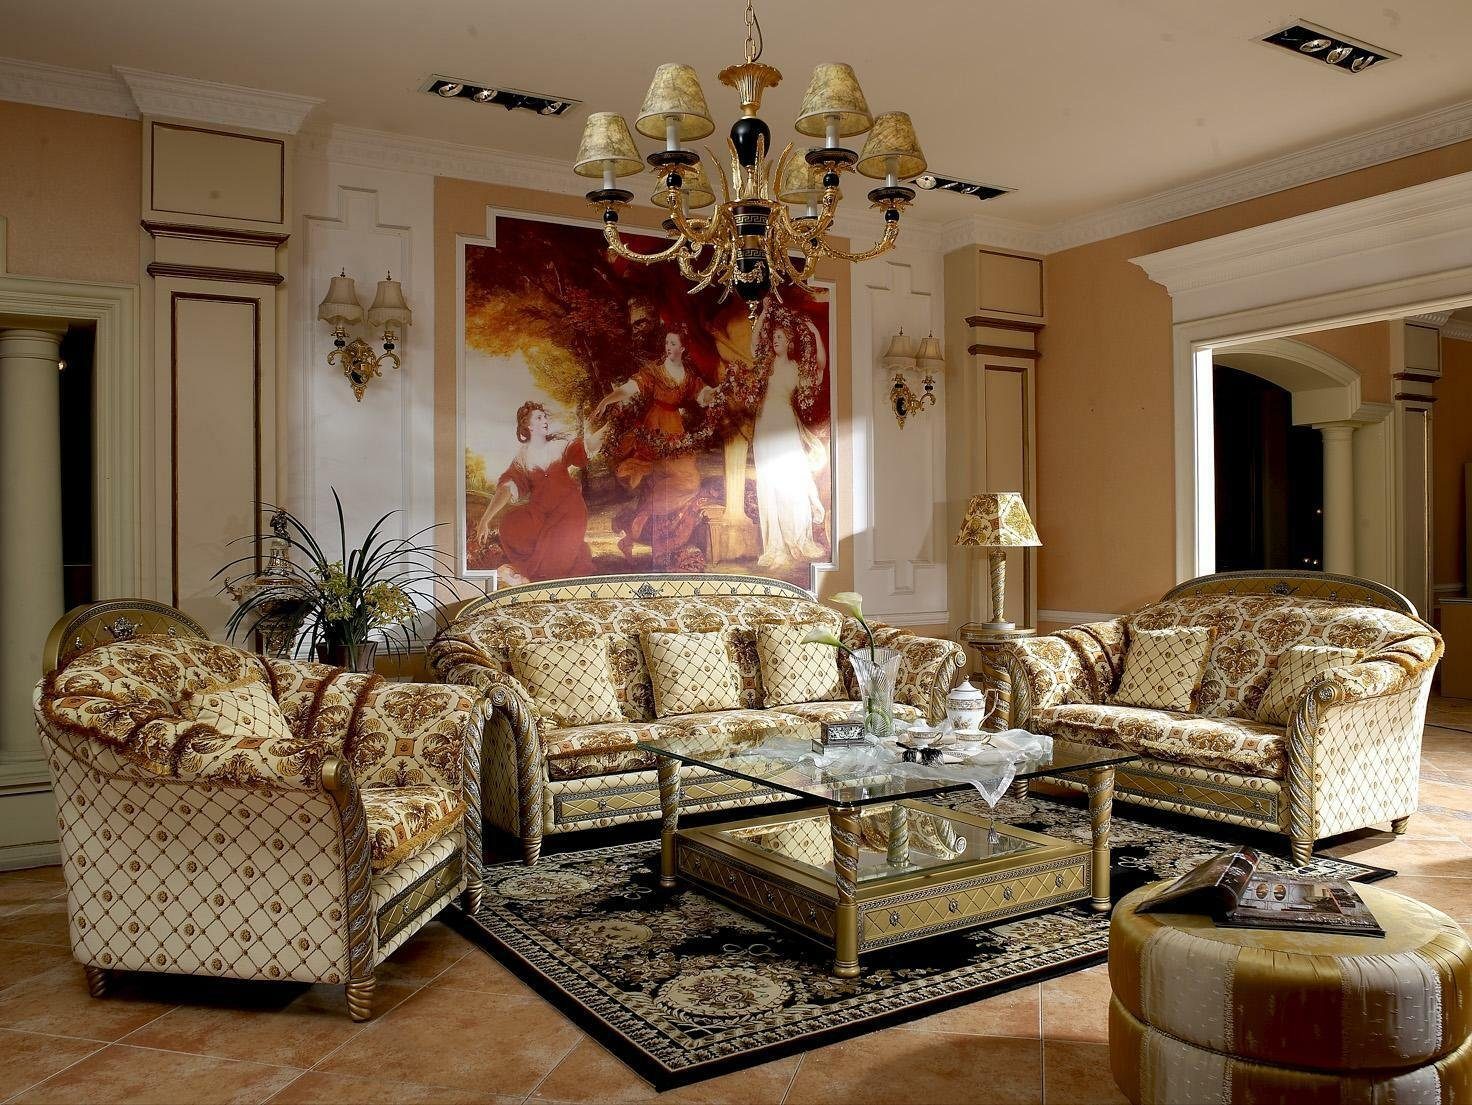 JVmoebel Sofa, 3+2+1 Sofagarnitur Couch Klassische Textil Stoff Couchen Polster Sofa | Alle Sofas